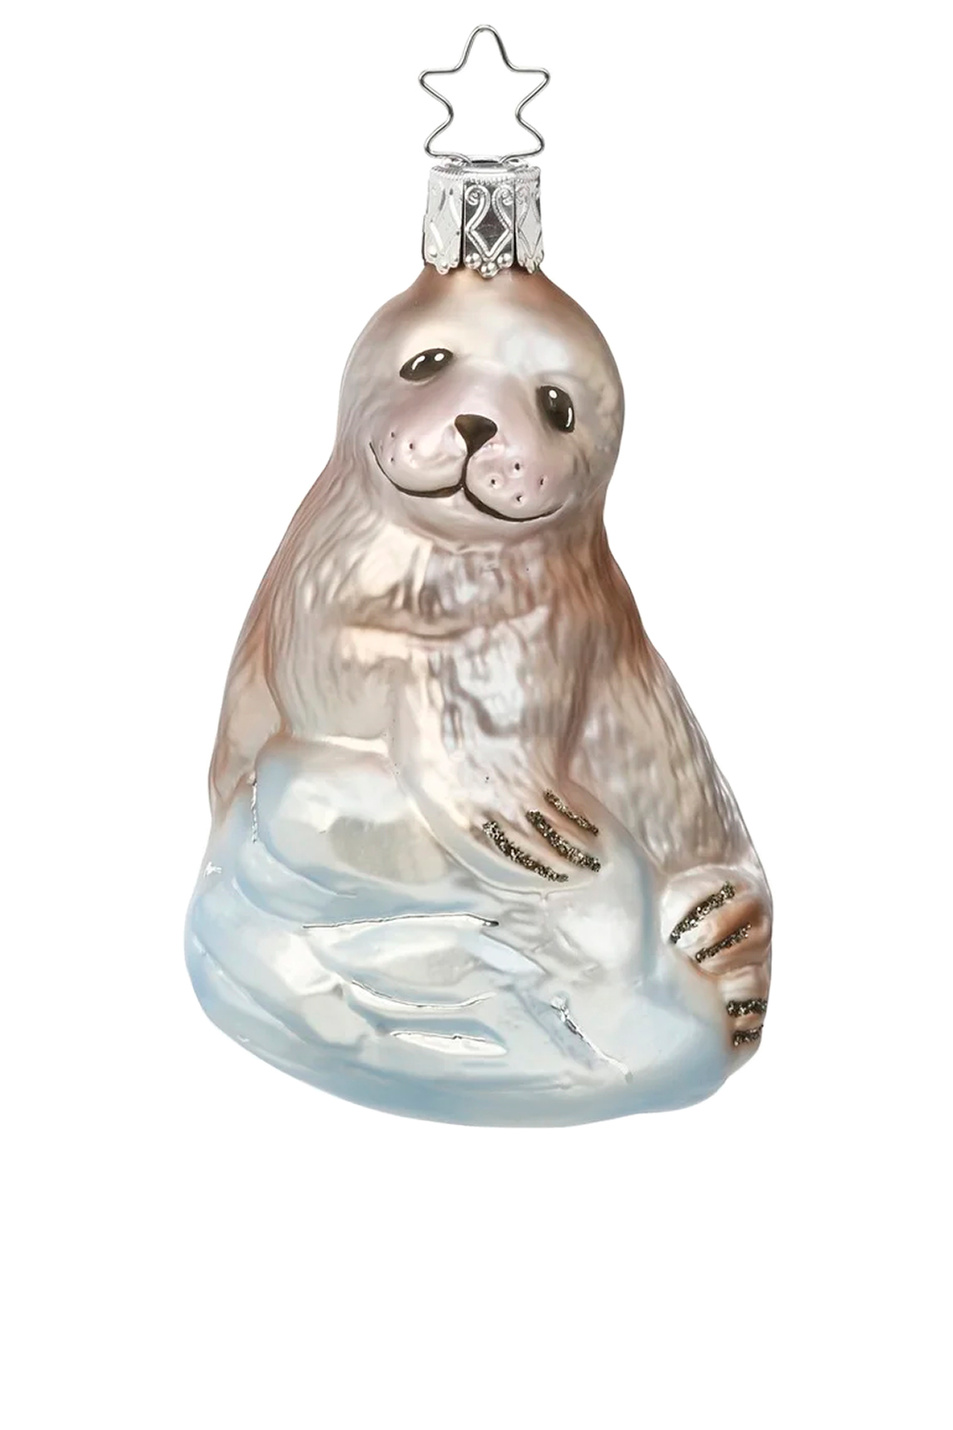 Не имеет пола Inge's Christmas Елочная игрушка "Морской котик", 9,5 см (цвет ), артикул 10089S015 | Фото 1